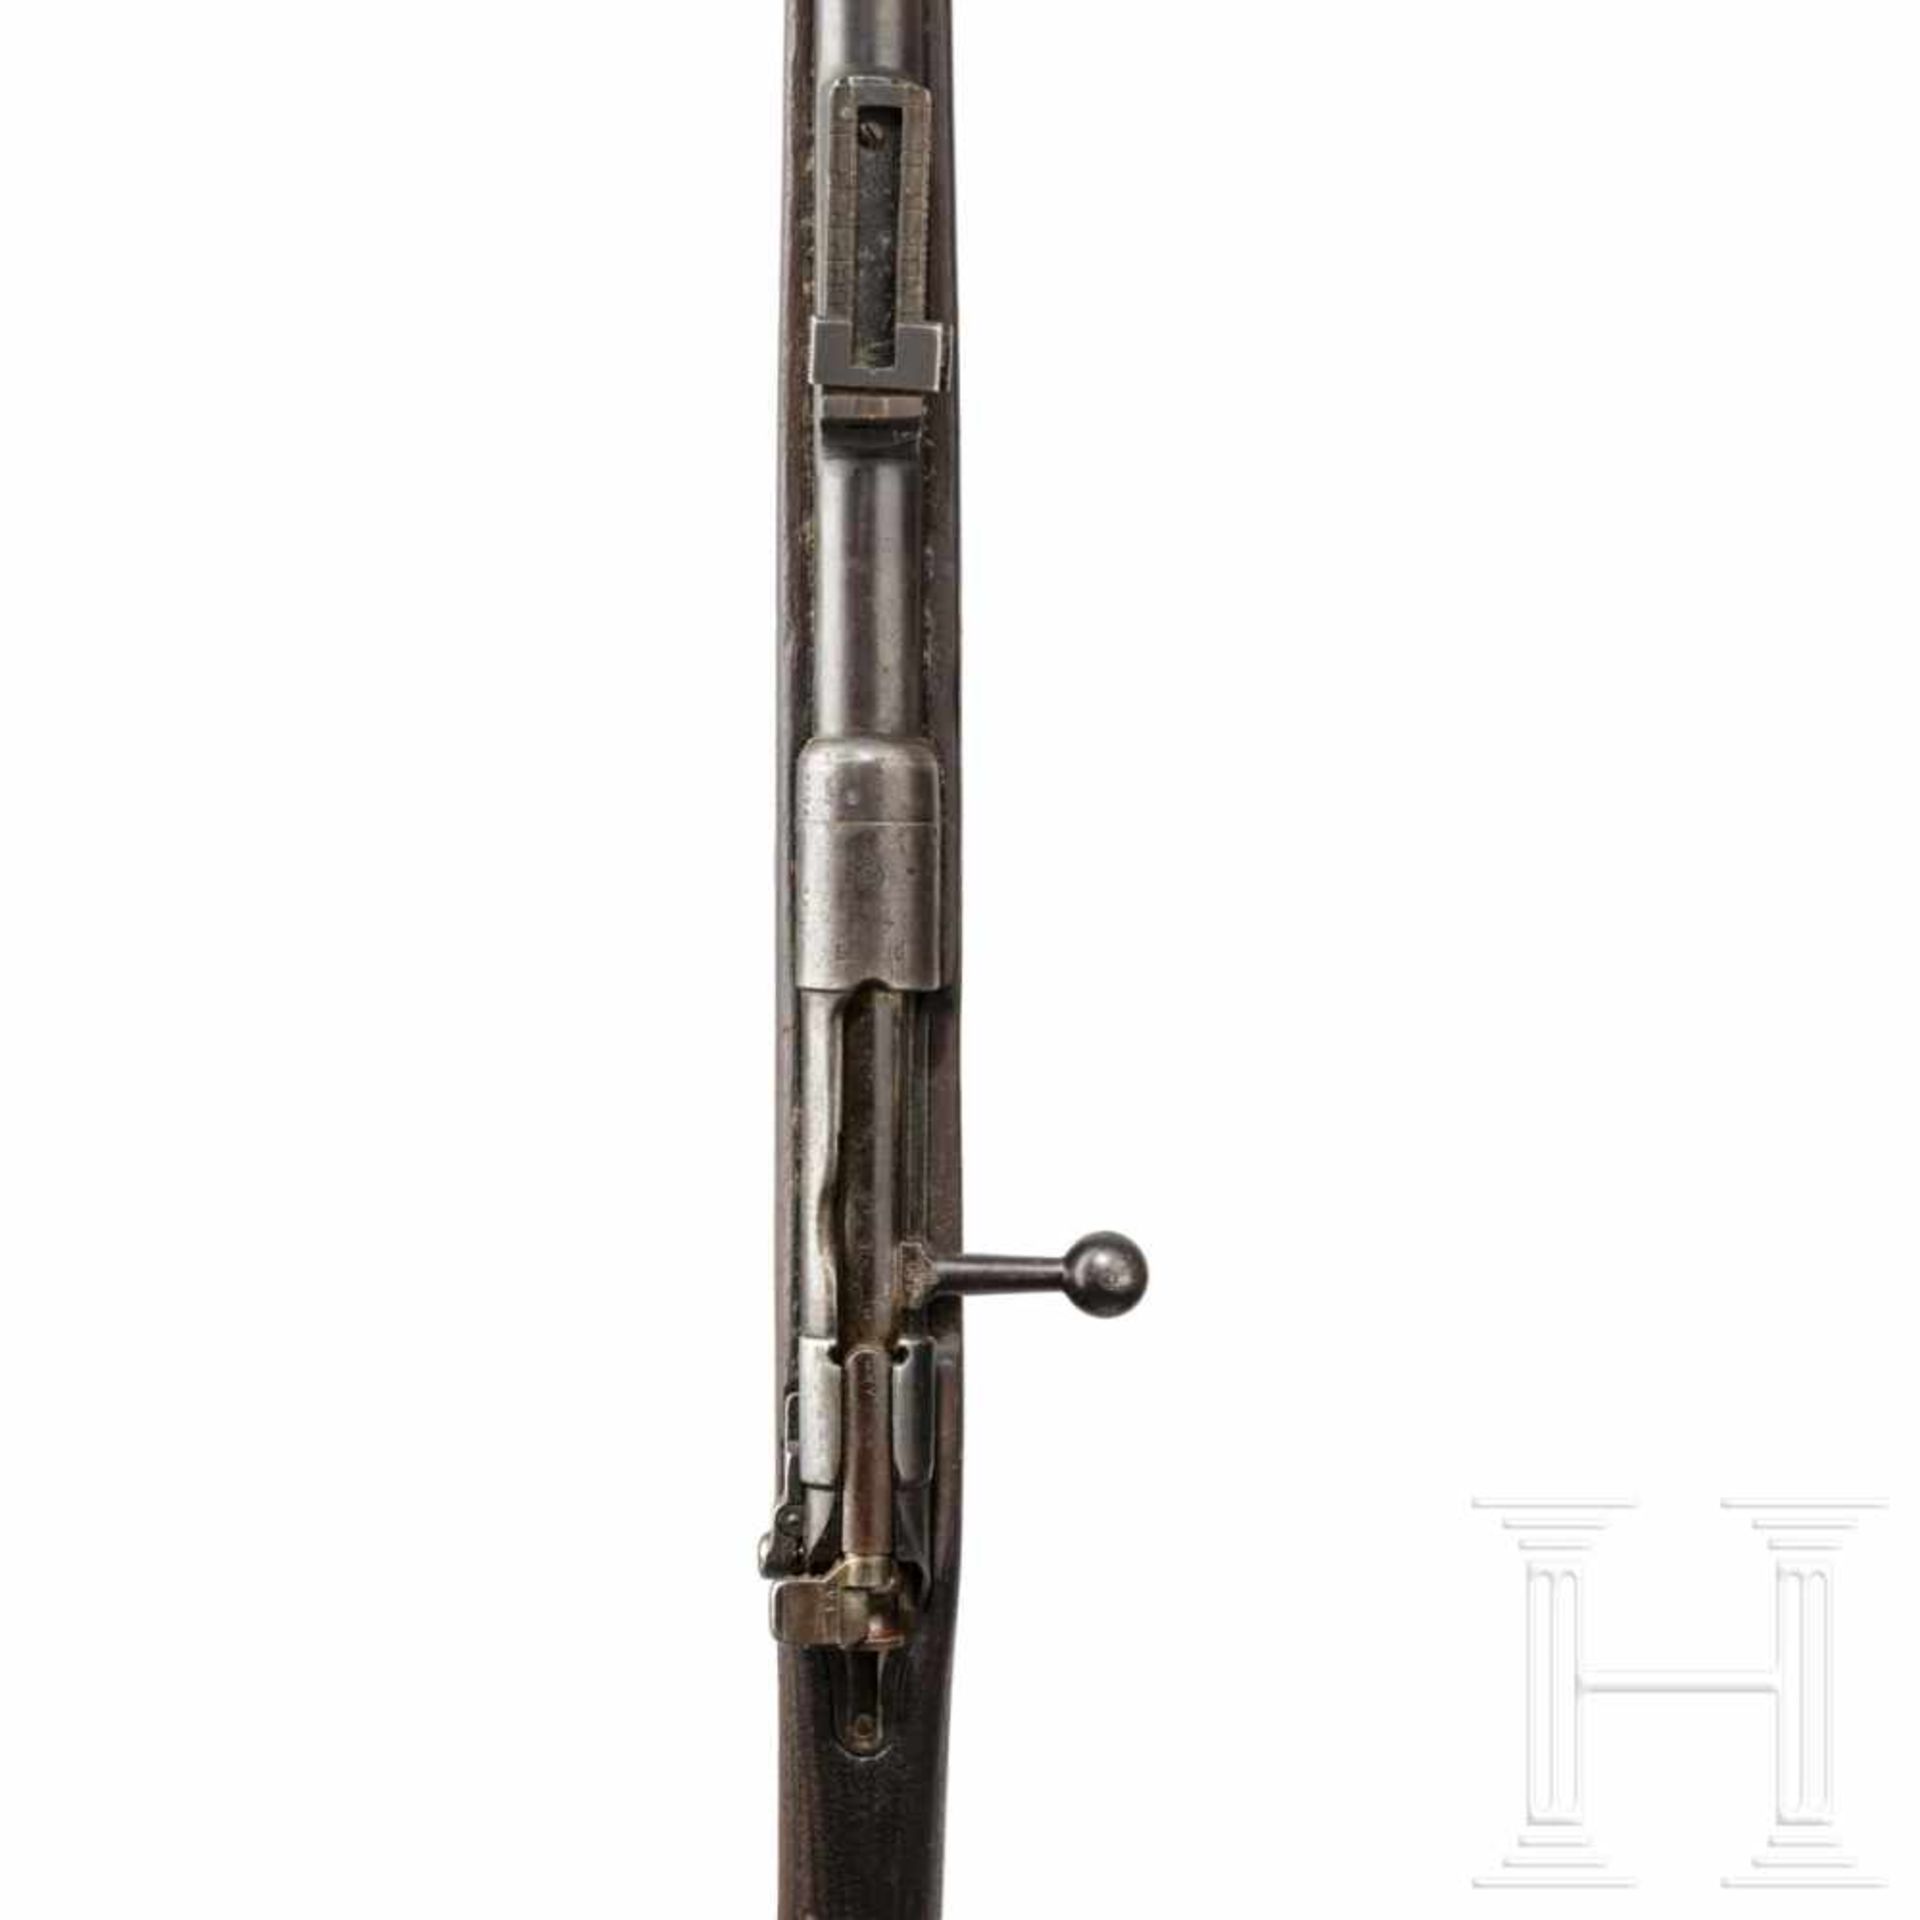 Gewehr 88/05, Danzig, 1890Kal. 8x57 IS, Nr. 5374 o, Nicht nummerngleich, Türken-Verschluss. - Bild 3 aus 3